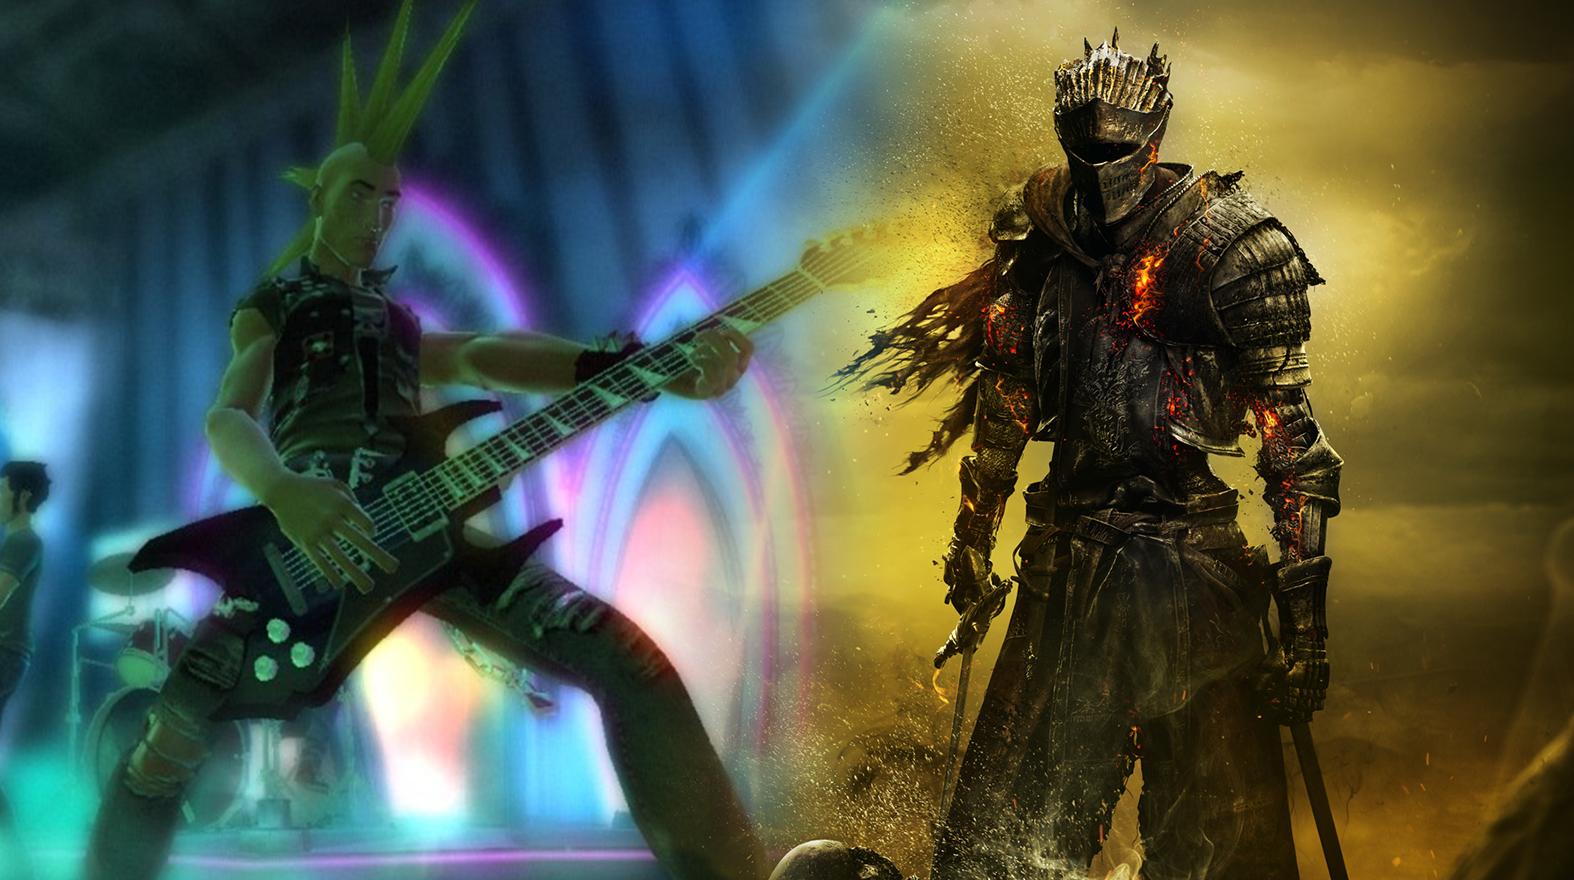 Guitar Hero gameplay / Dark Souls 3 artwork